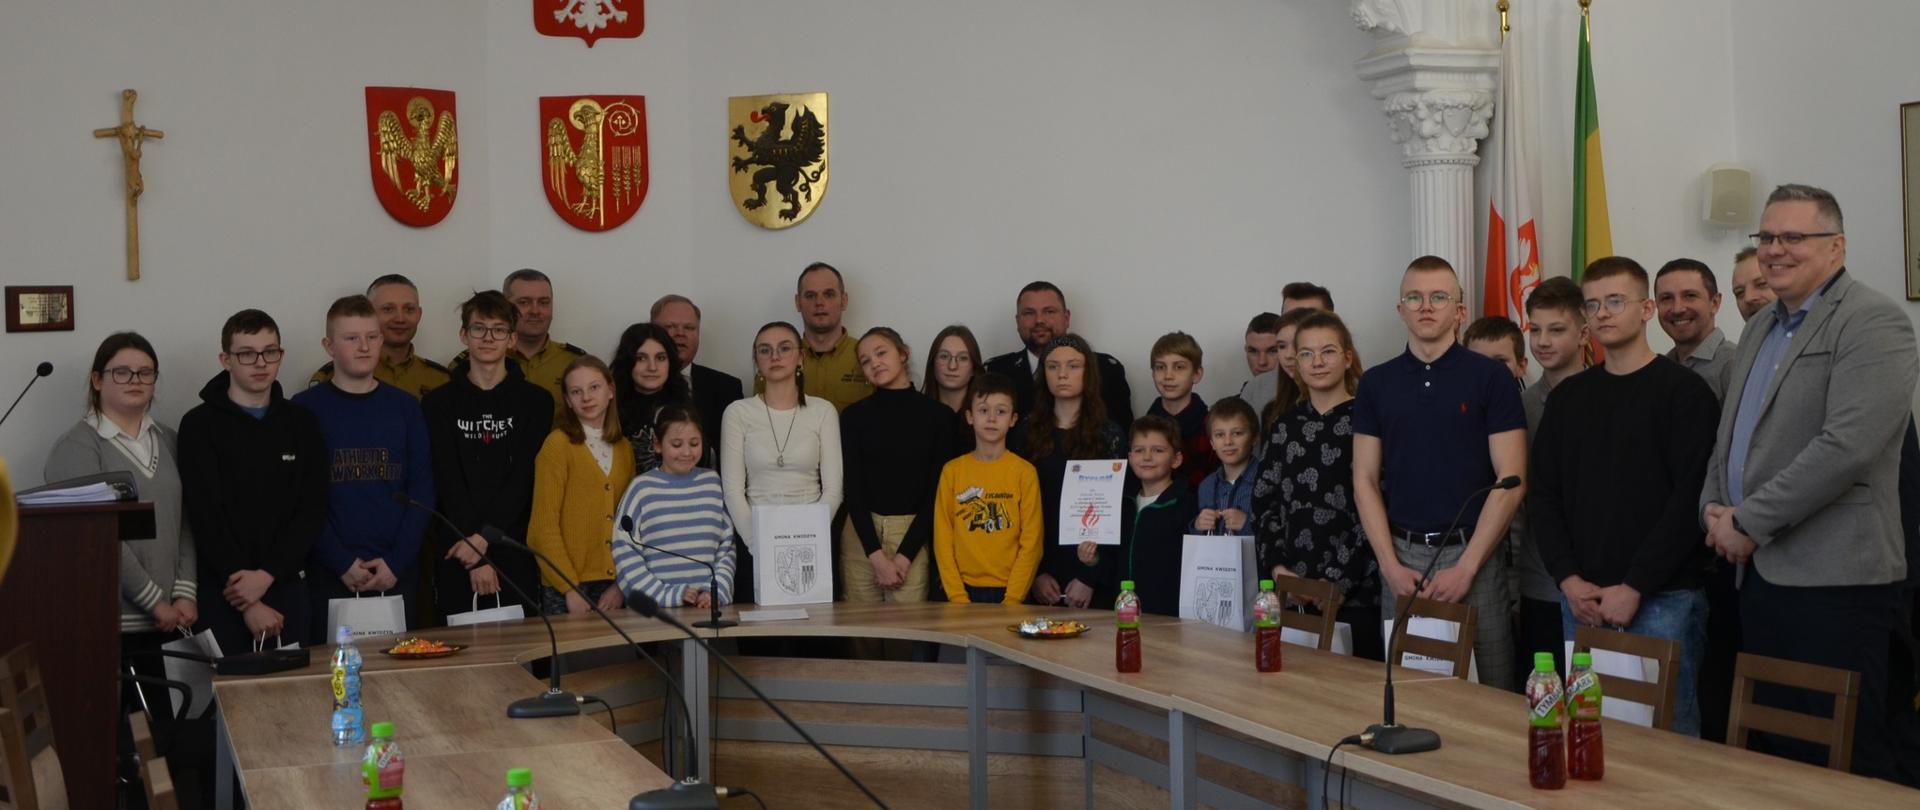 Uczestnicy Turnieju, jury i goście w sali urzędu gminy Kwidzyn